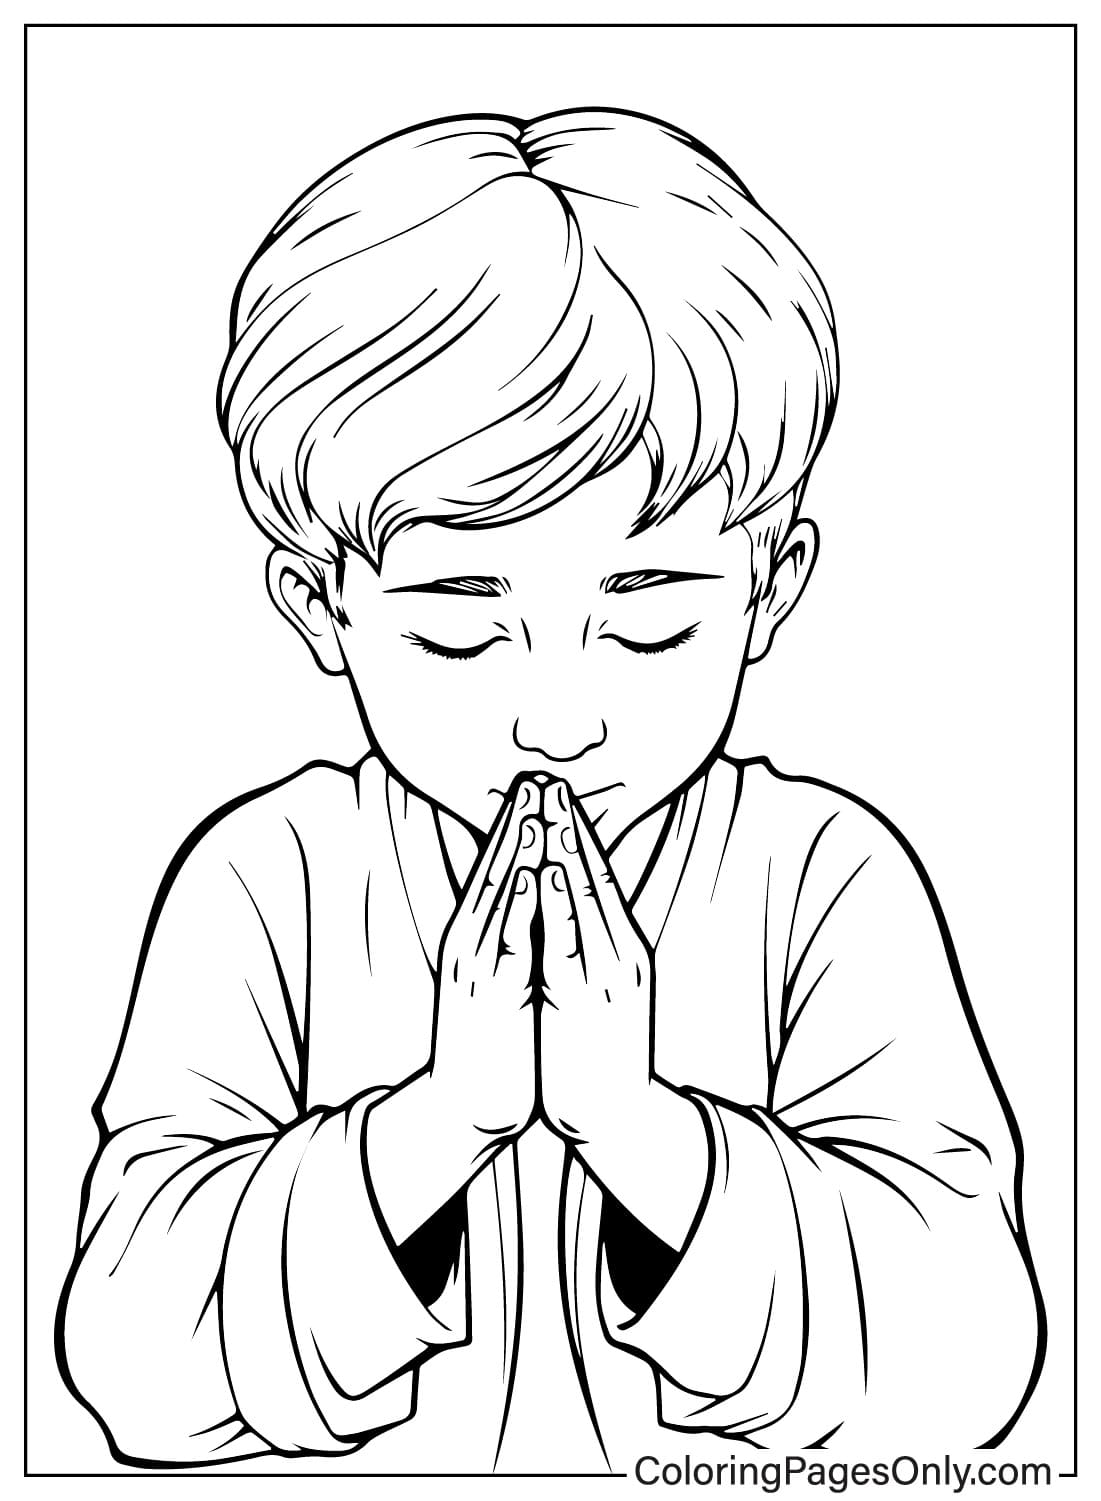 Junge, der vom Gebetstag an betet